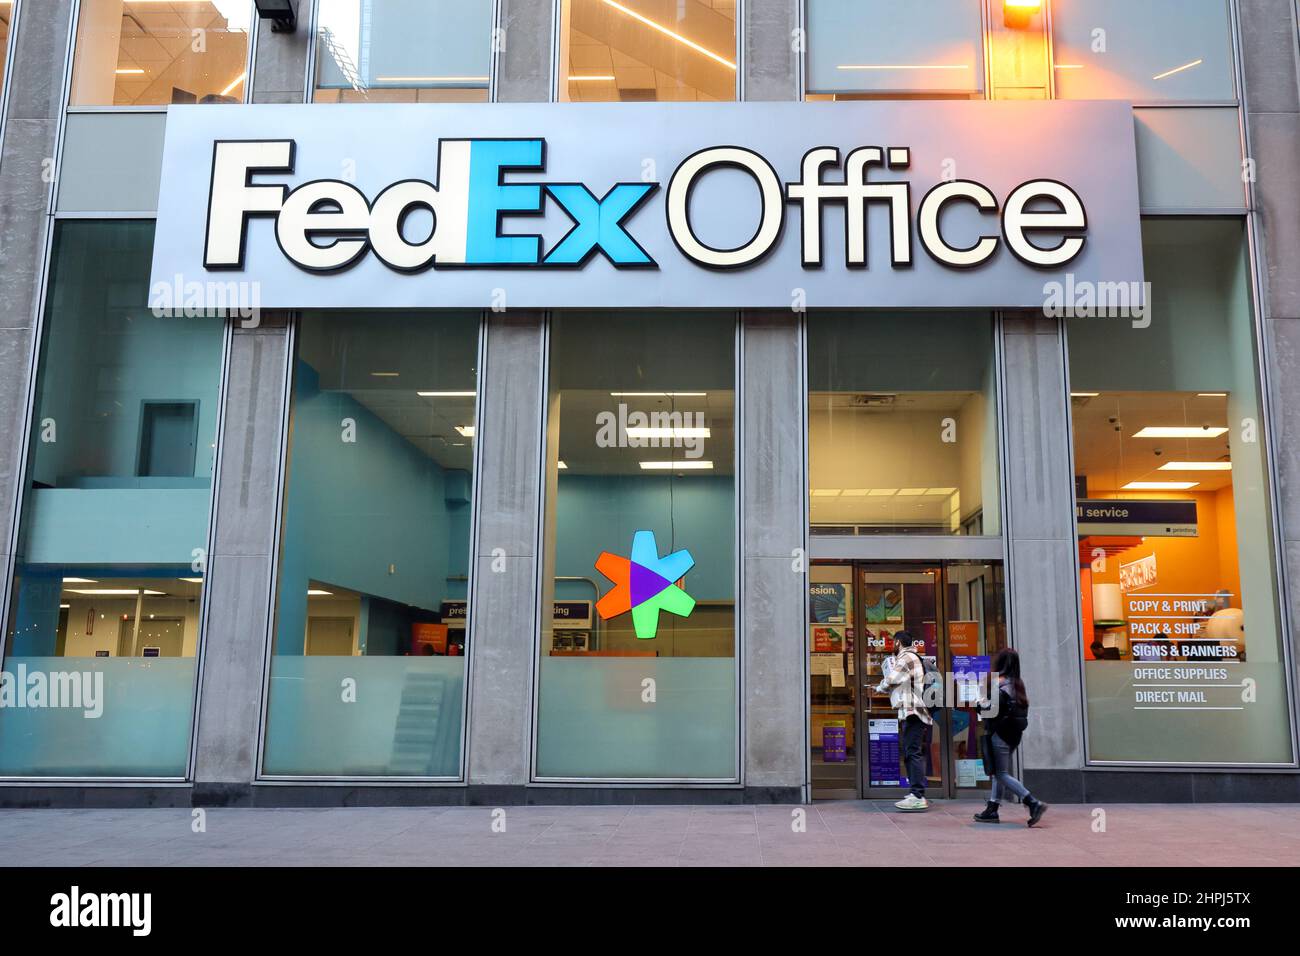 FedEx Office, 125 W 47th St, New York, NY. Le gigantesque logo d'une société logistique d'impression et d'expédition surplombe les acheteurs de Midtown Manhattan. Banque D'Images